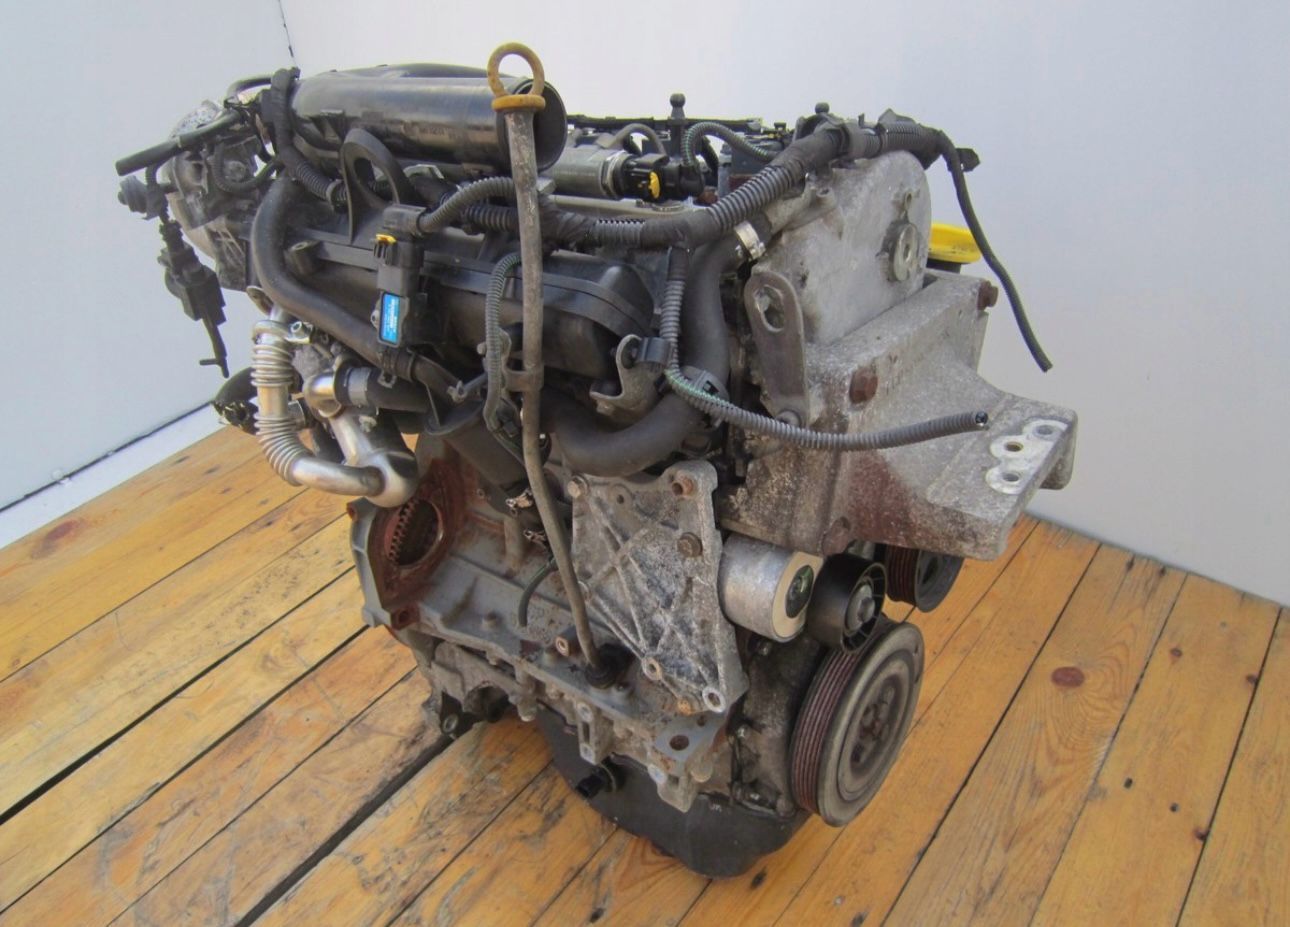 Motor Opel Astra H 1.3 CDTI cod motor Z13DTH